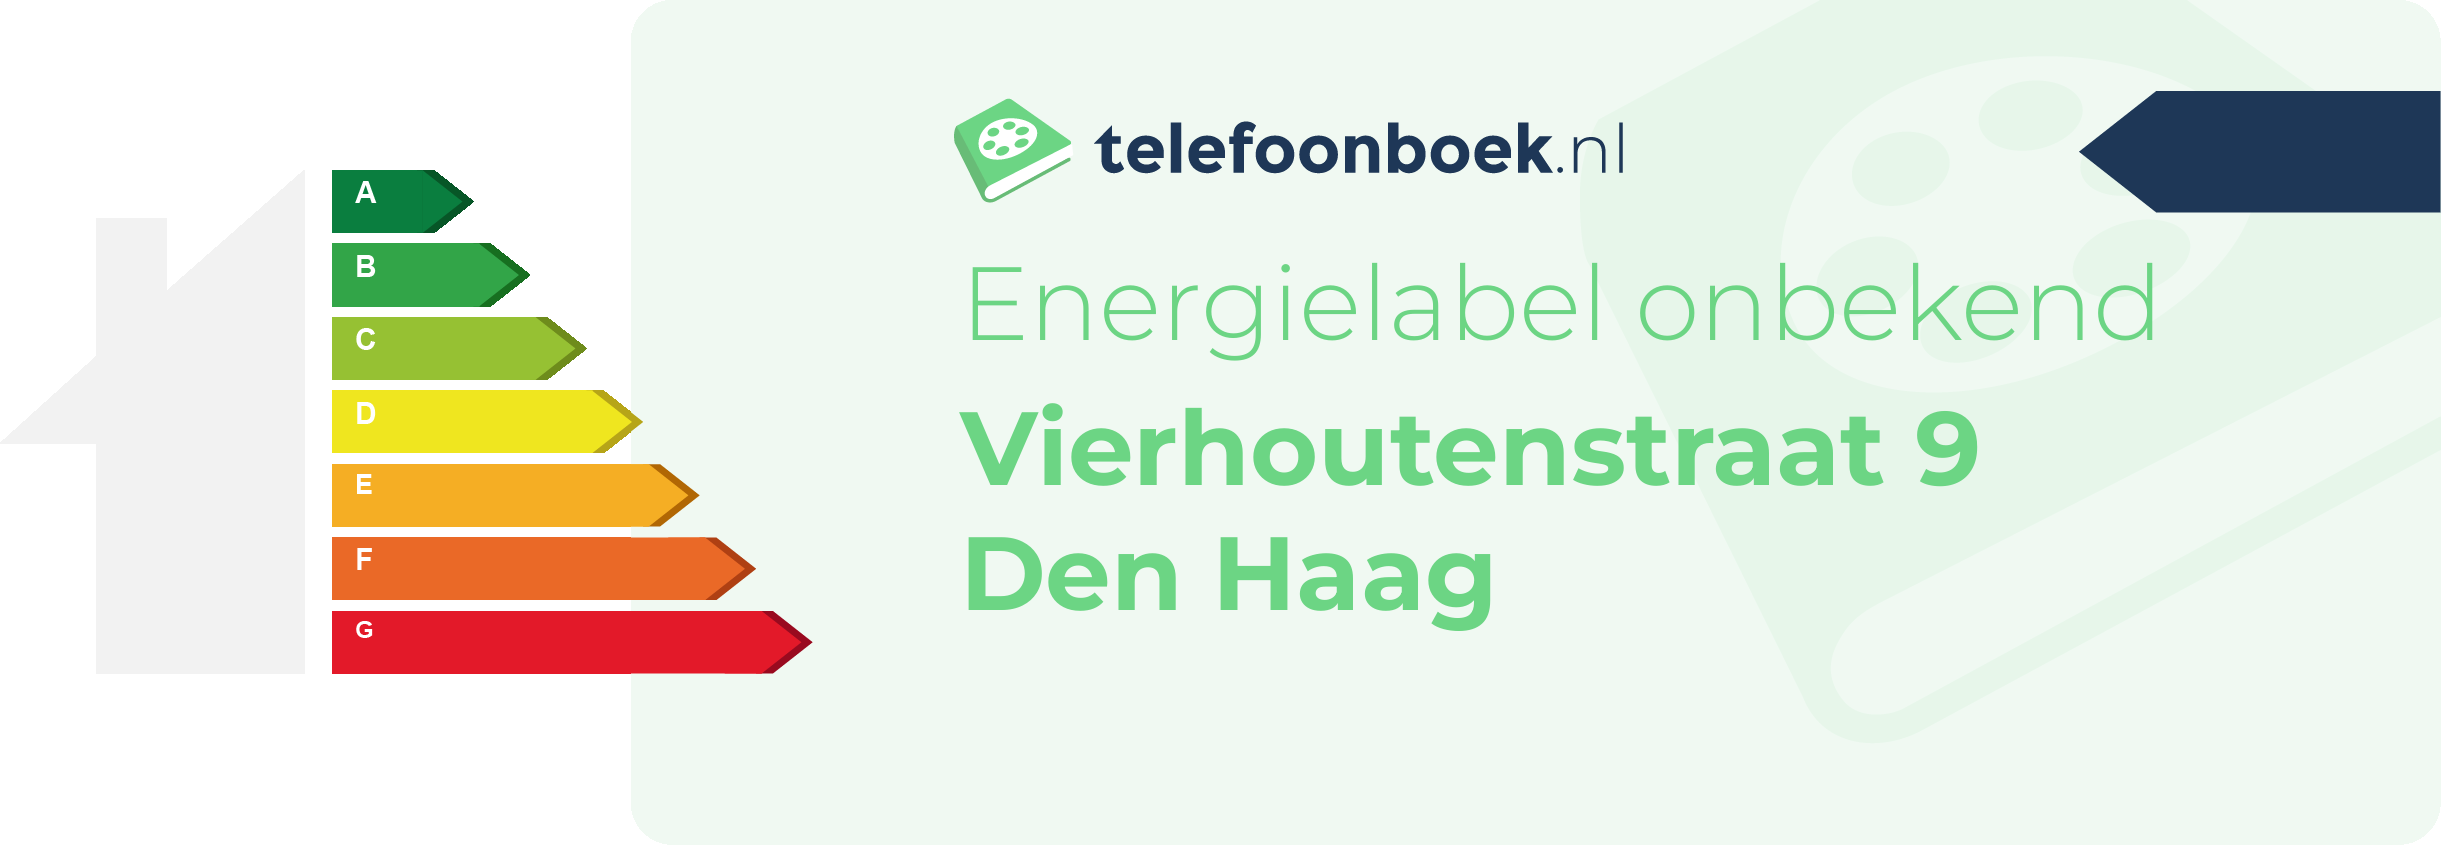 Energielabel Vierhoutenstraat 9 Den Haag